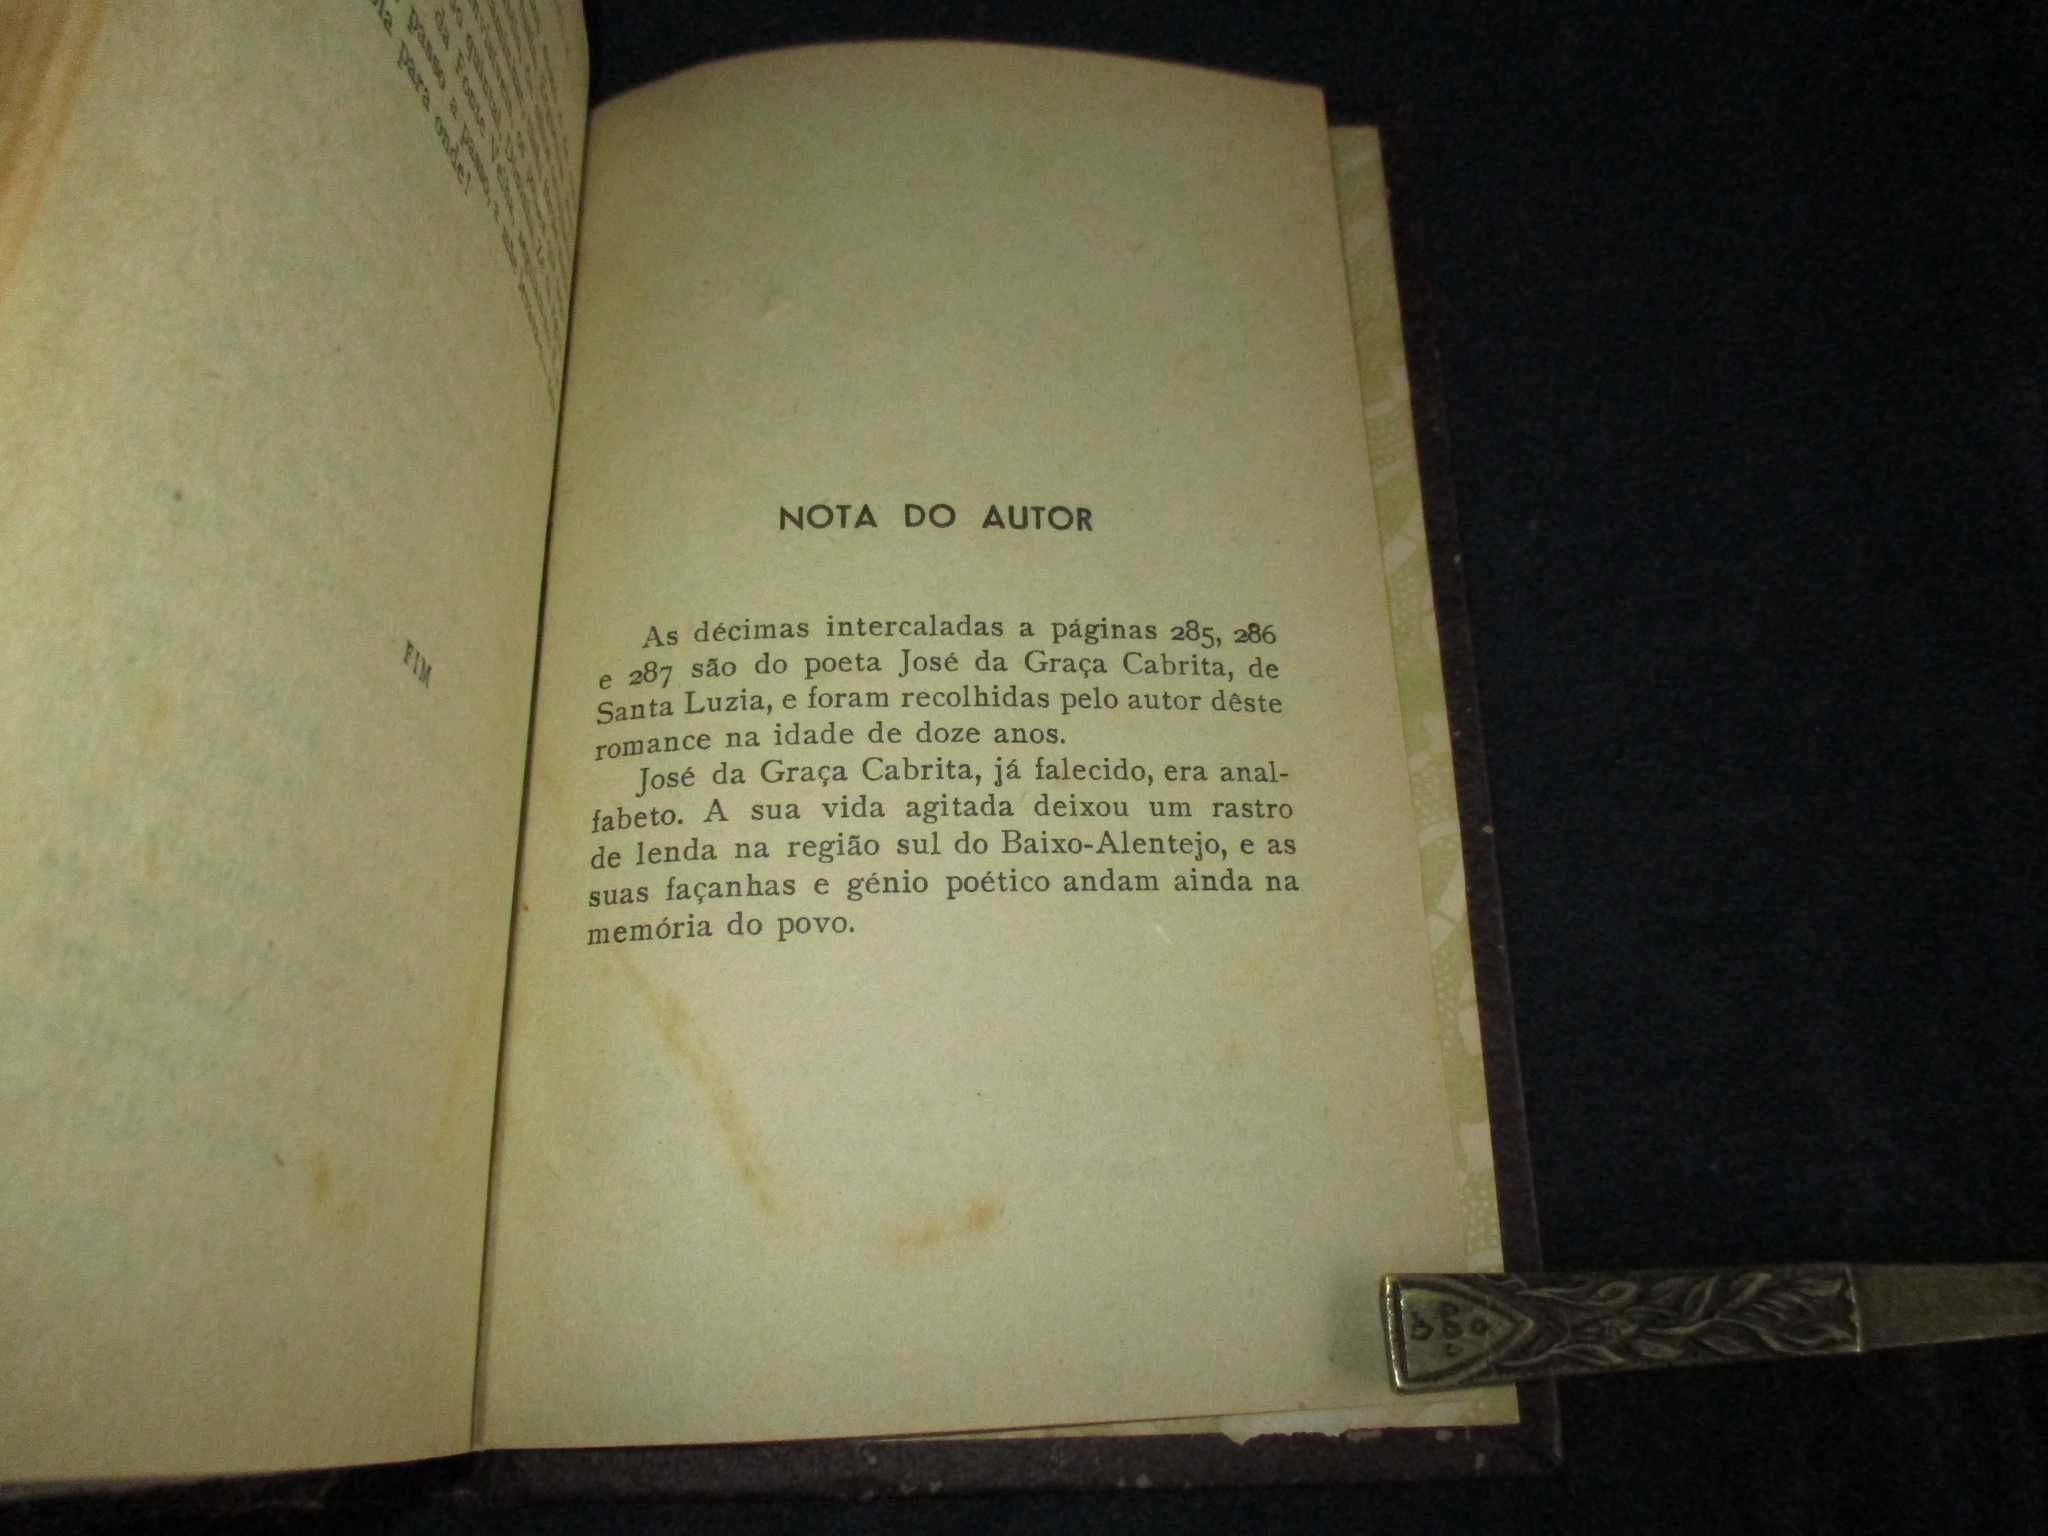 Livro Cerromaior Manuel da Fonseca 2ª edição 1943